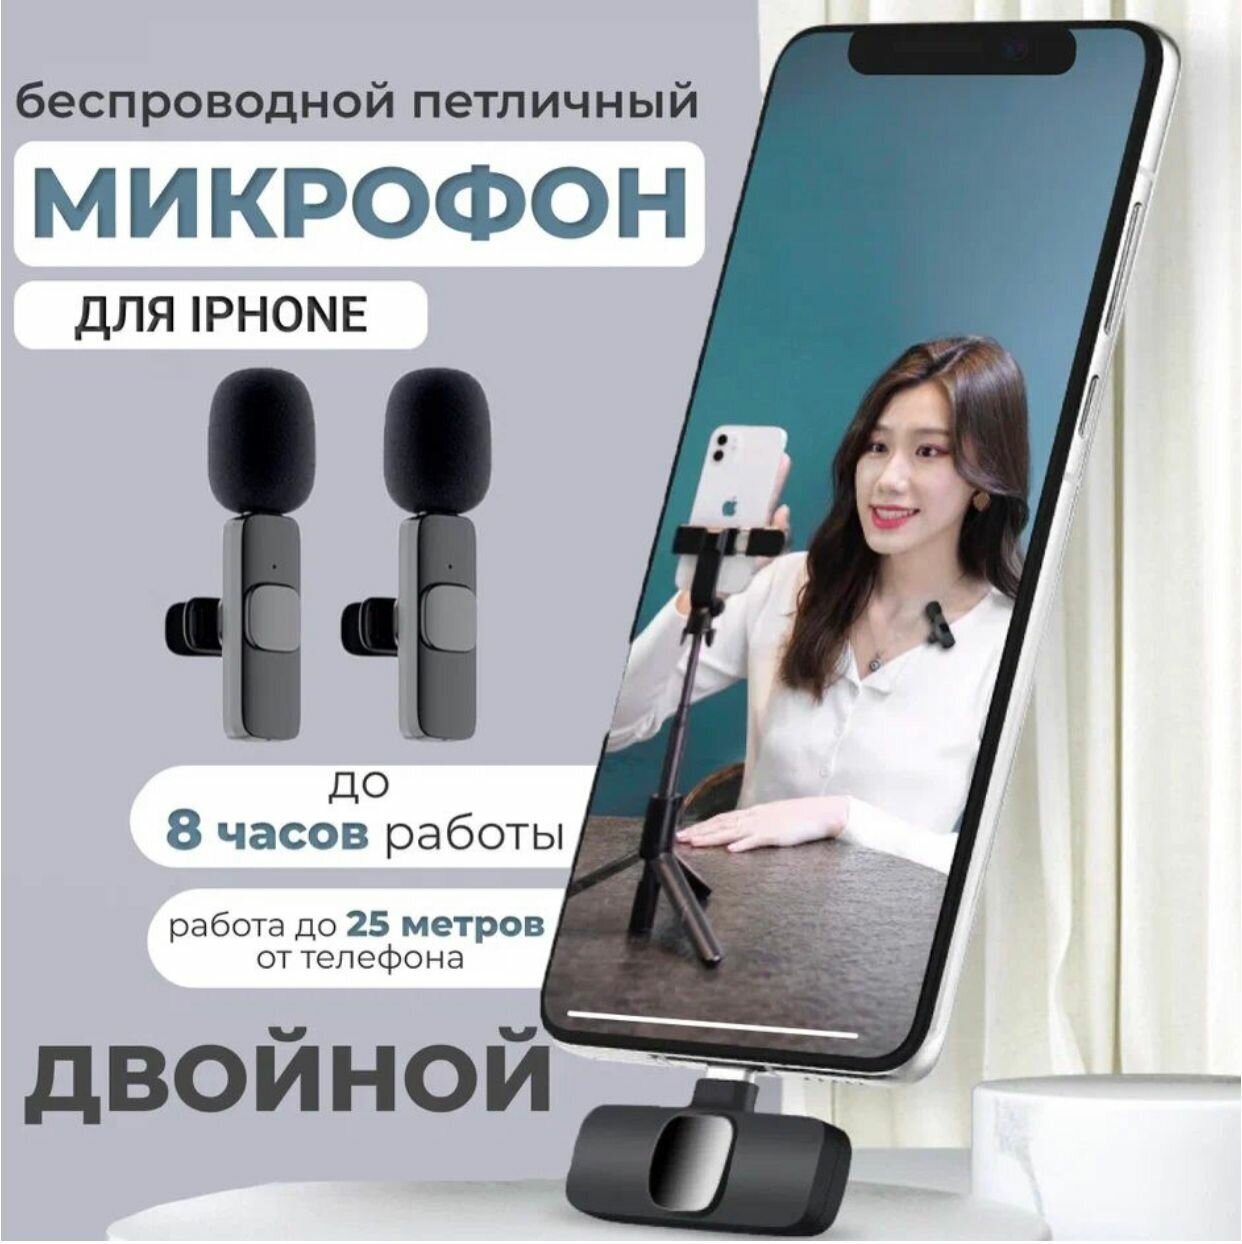 Комплект Premium из 2 беспроводных петличных микрофонов K9L duo для iPhone и iPad с шумоподавлением, черные / штекер Lightning для устройств Apple